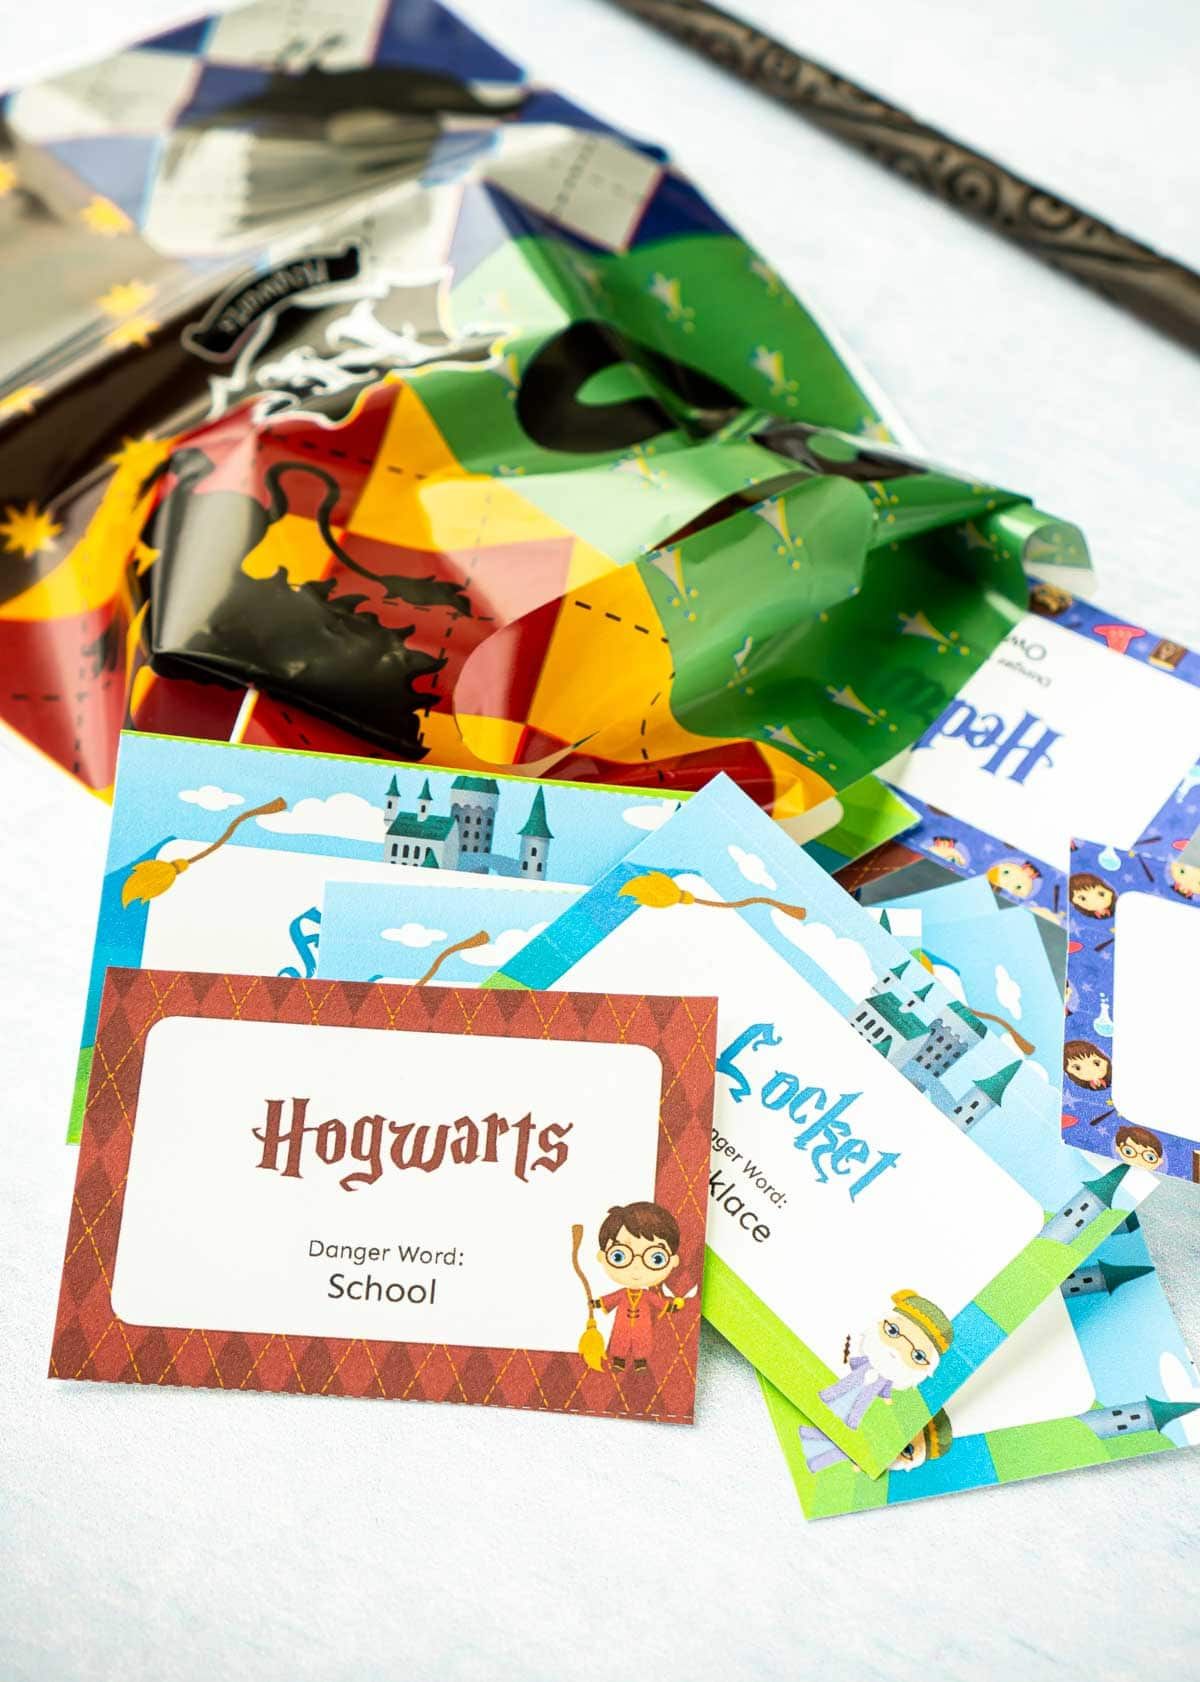 چھوٹے کاغذی کارڈ جس میں ہیری پوٹر کے فقرے ہیں اور ان میں ہیری پوٹر گوڈی بیگ ہے